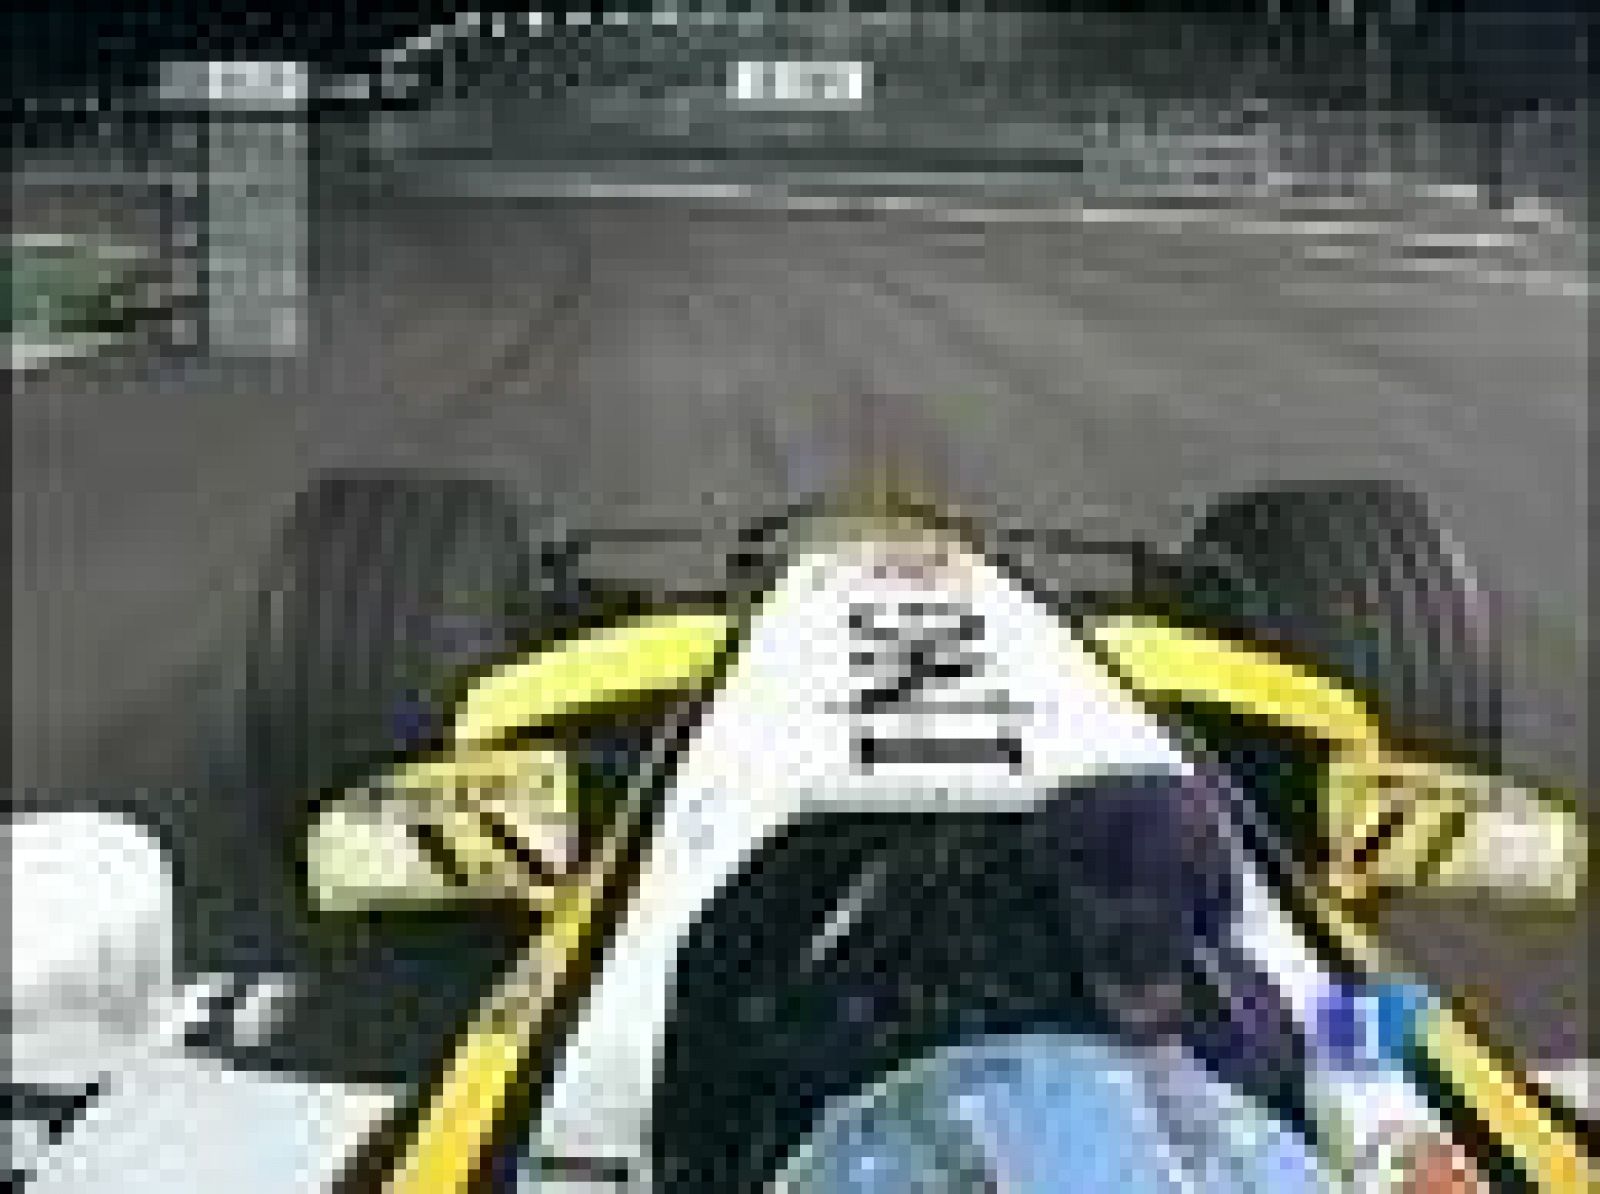 La escudería Renault ha anunciado el cese de su director deportivo, Flavio Briatore, y el ingeniero jefe, Pat Symonds, por el presunto amaño del Gran Premio de Singapur 2008.